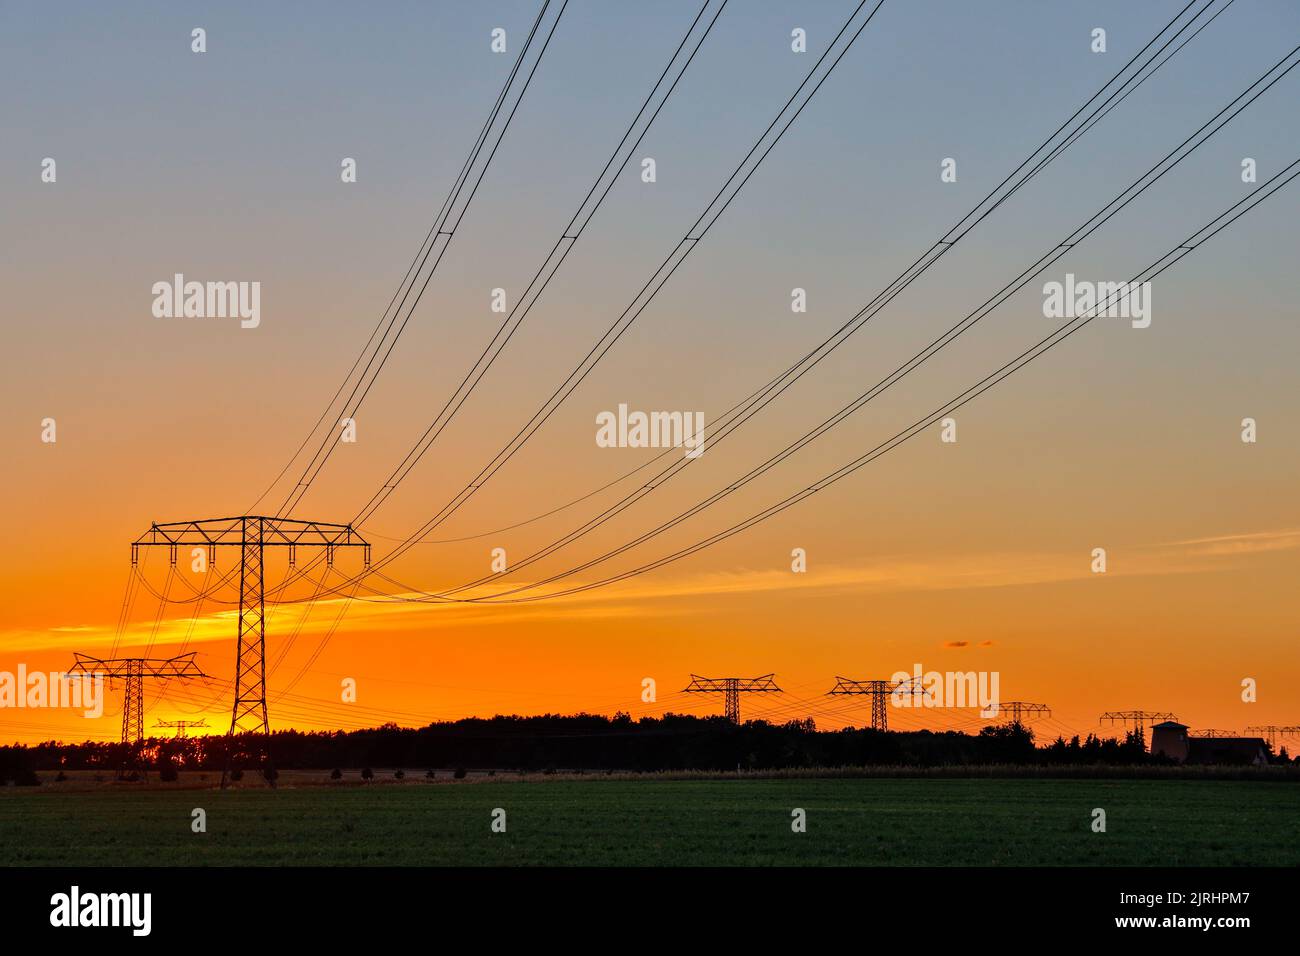 Freileitungstrasse im Sonnenuntergang Übertragung Energie Stock Photo